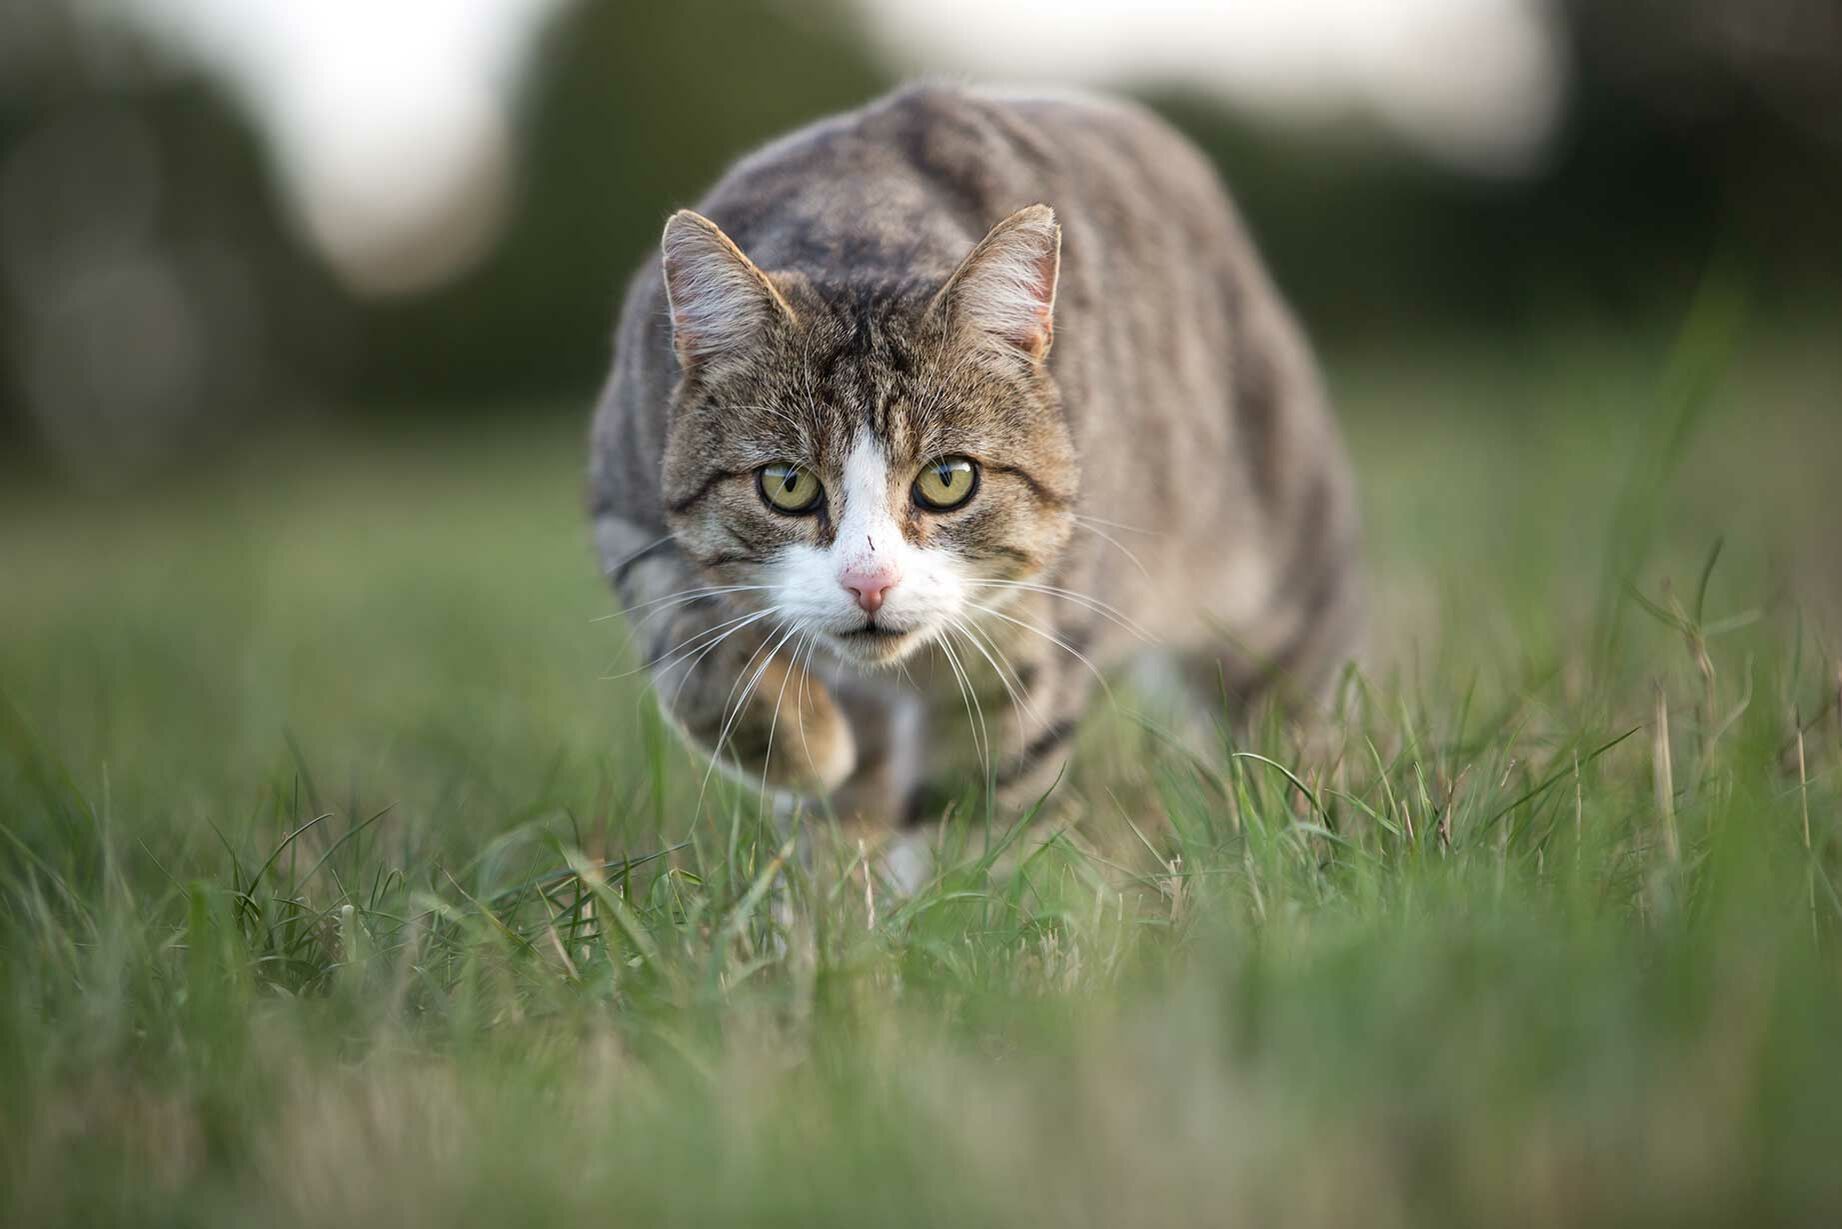 Eine jagende Katze guckt gespannt nach Beute in Laufrichtung.